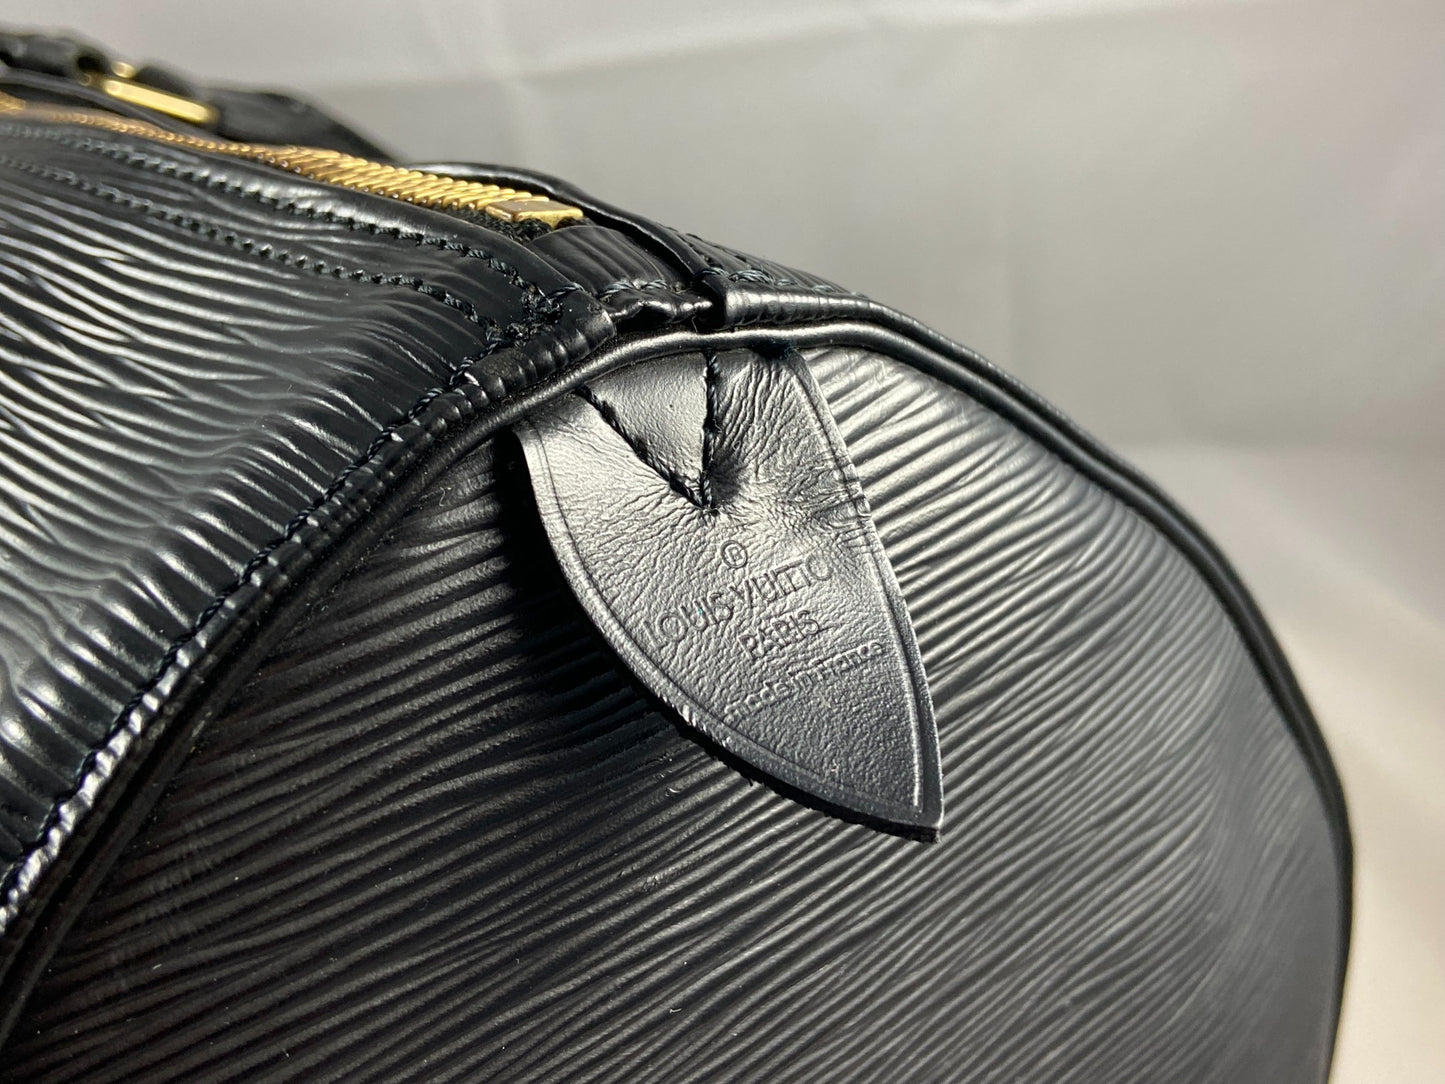 Louis Vuitton Keepall 55 Black Epi Leather